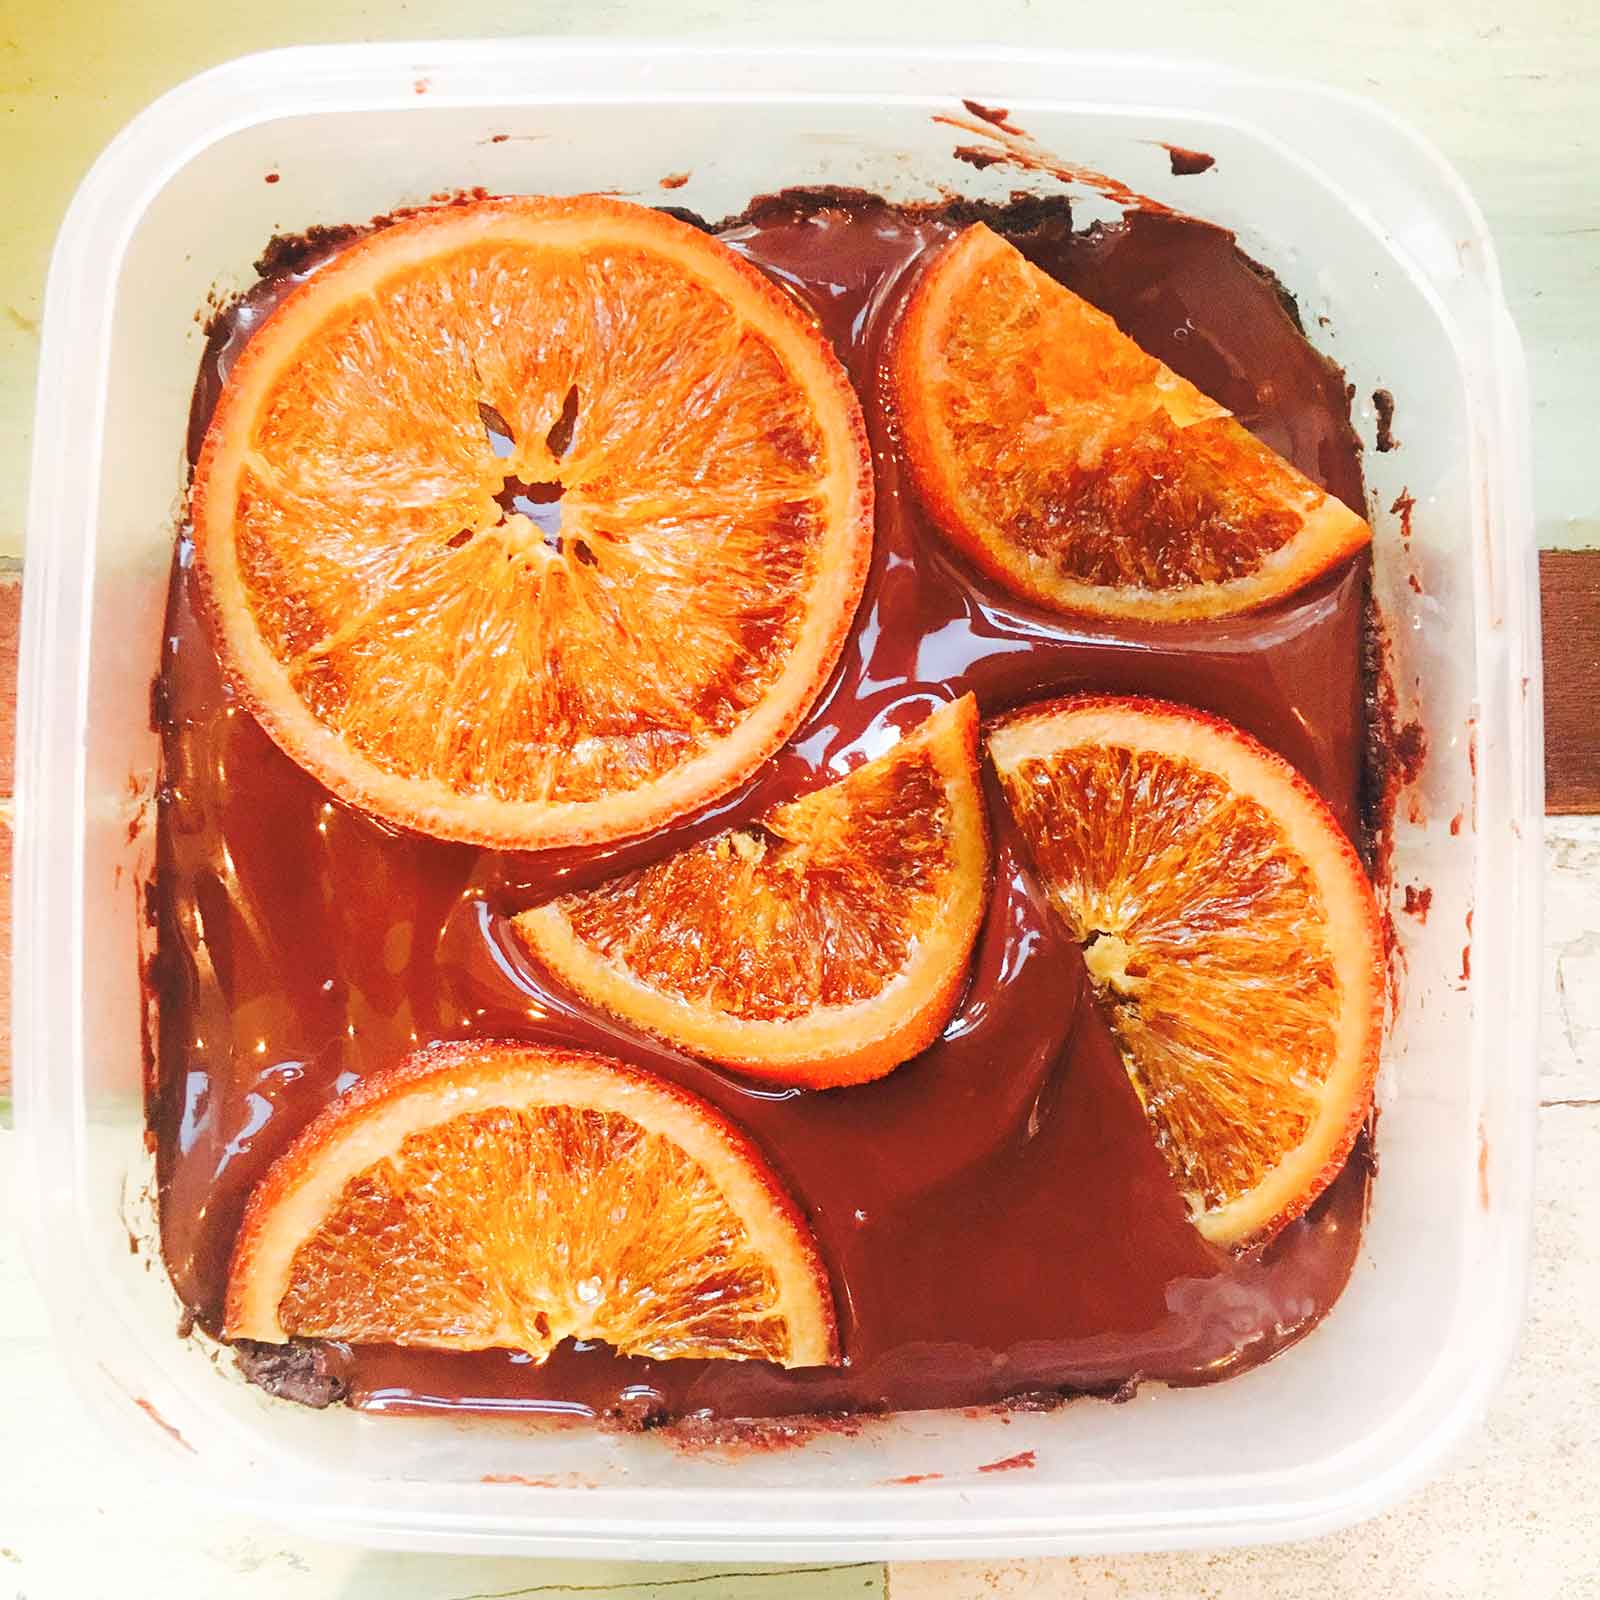 オーブン不要 誰でも簡単に作れちゃう オレンジチョコケーキ 柏原歩のトレンドレシピ モデルプレス